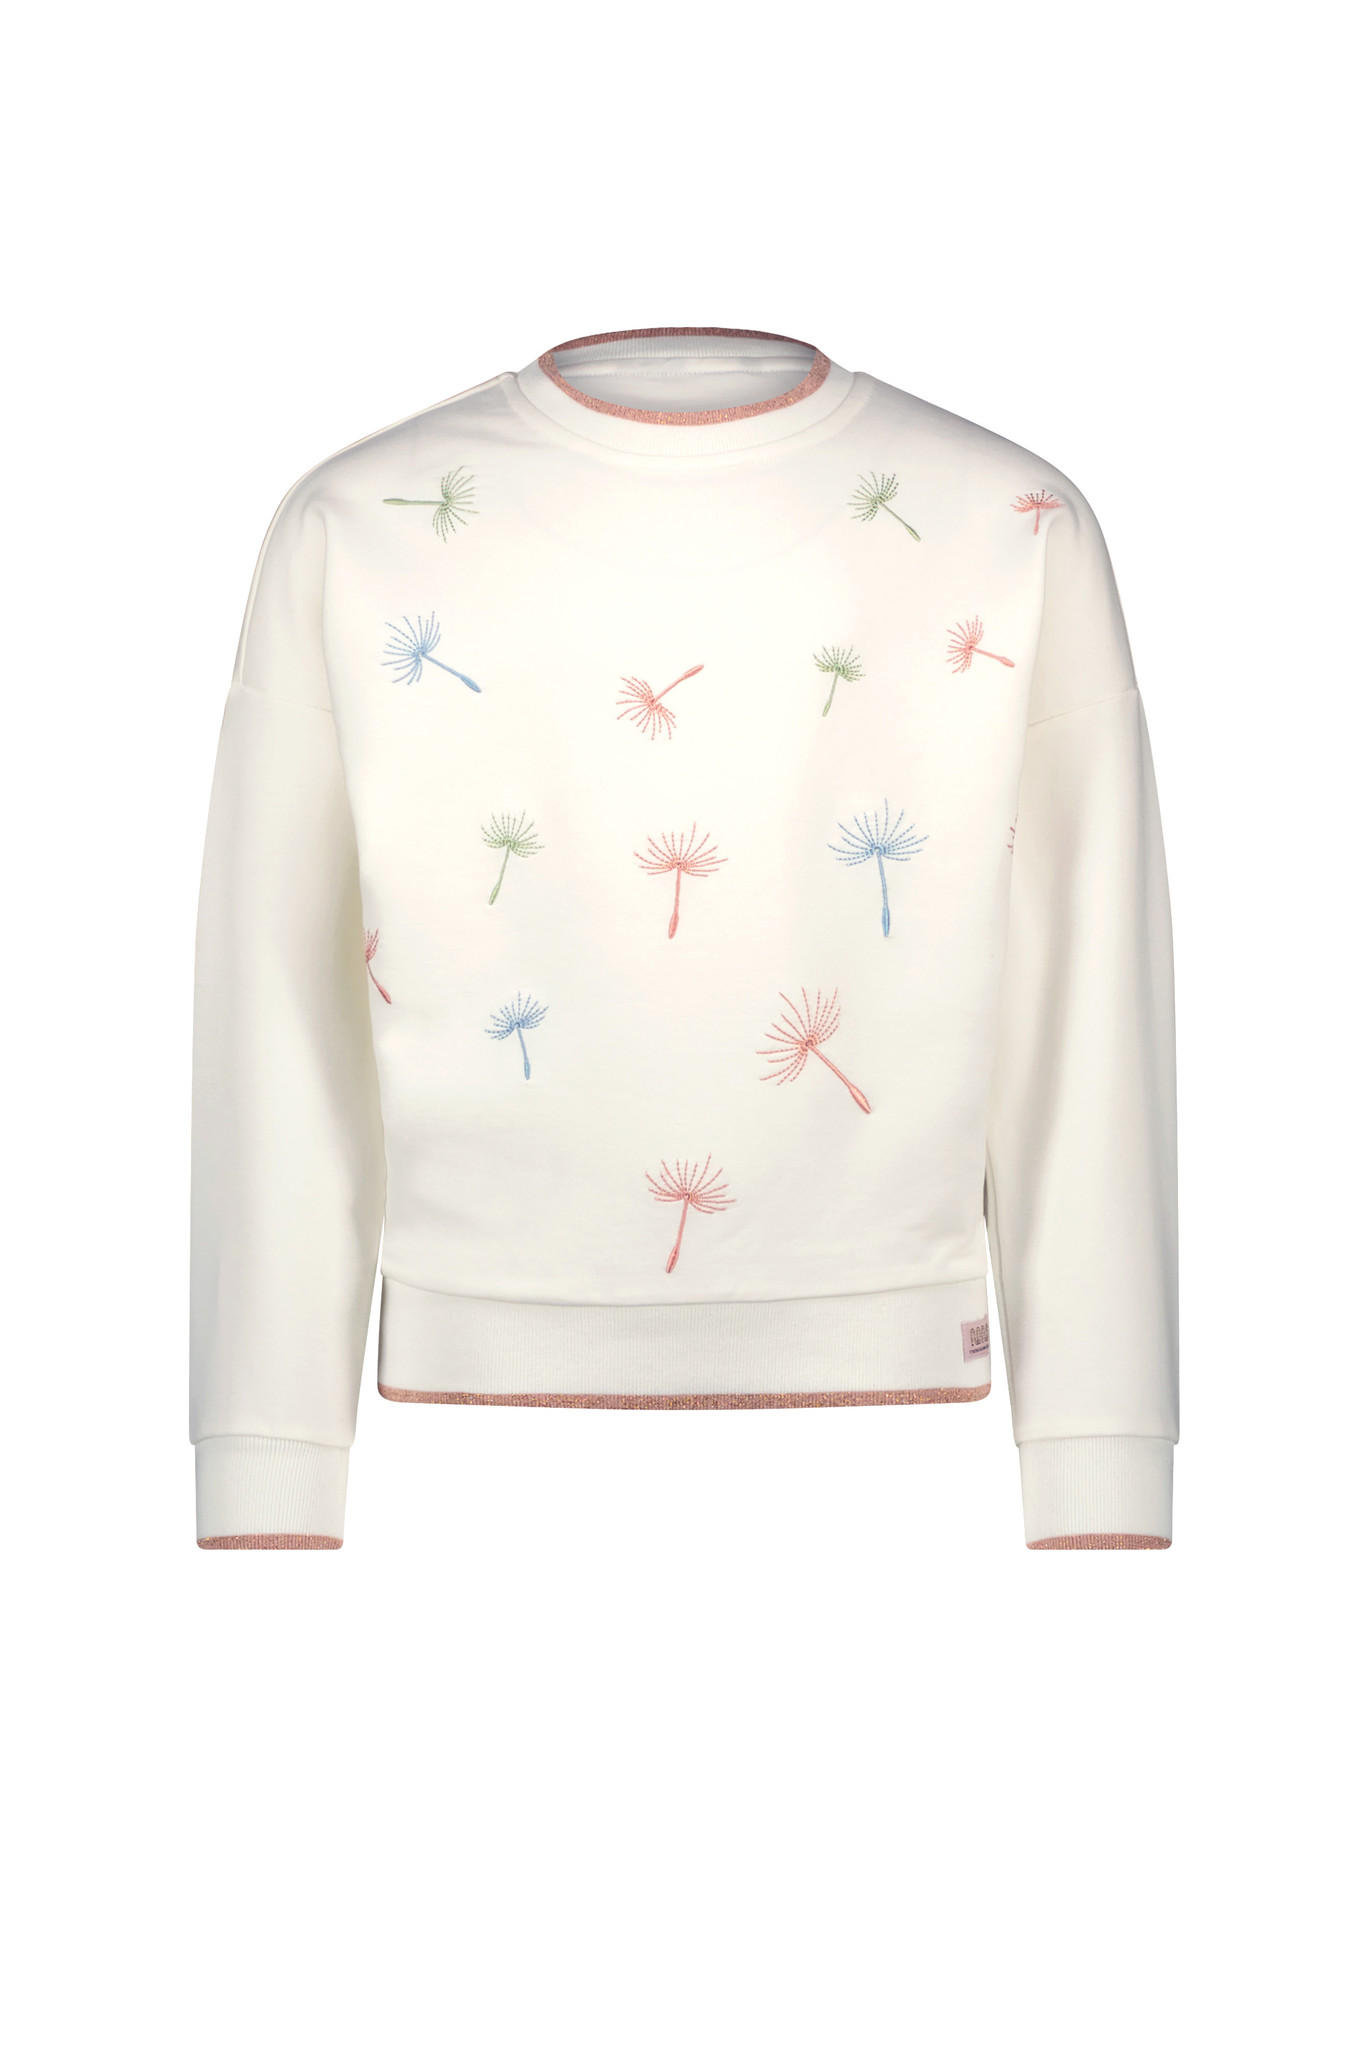 NoNo Meisjes sweater - Kessa - Sneeuw wit